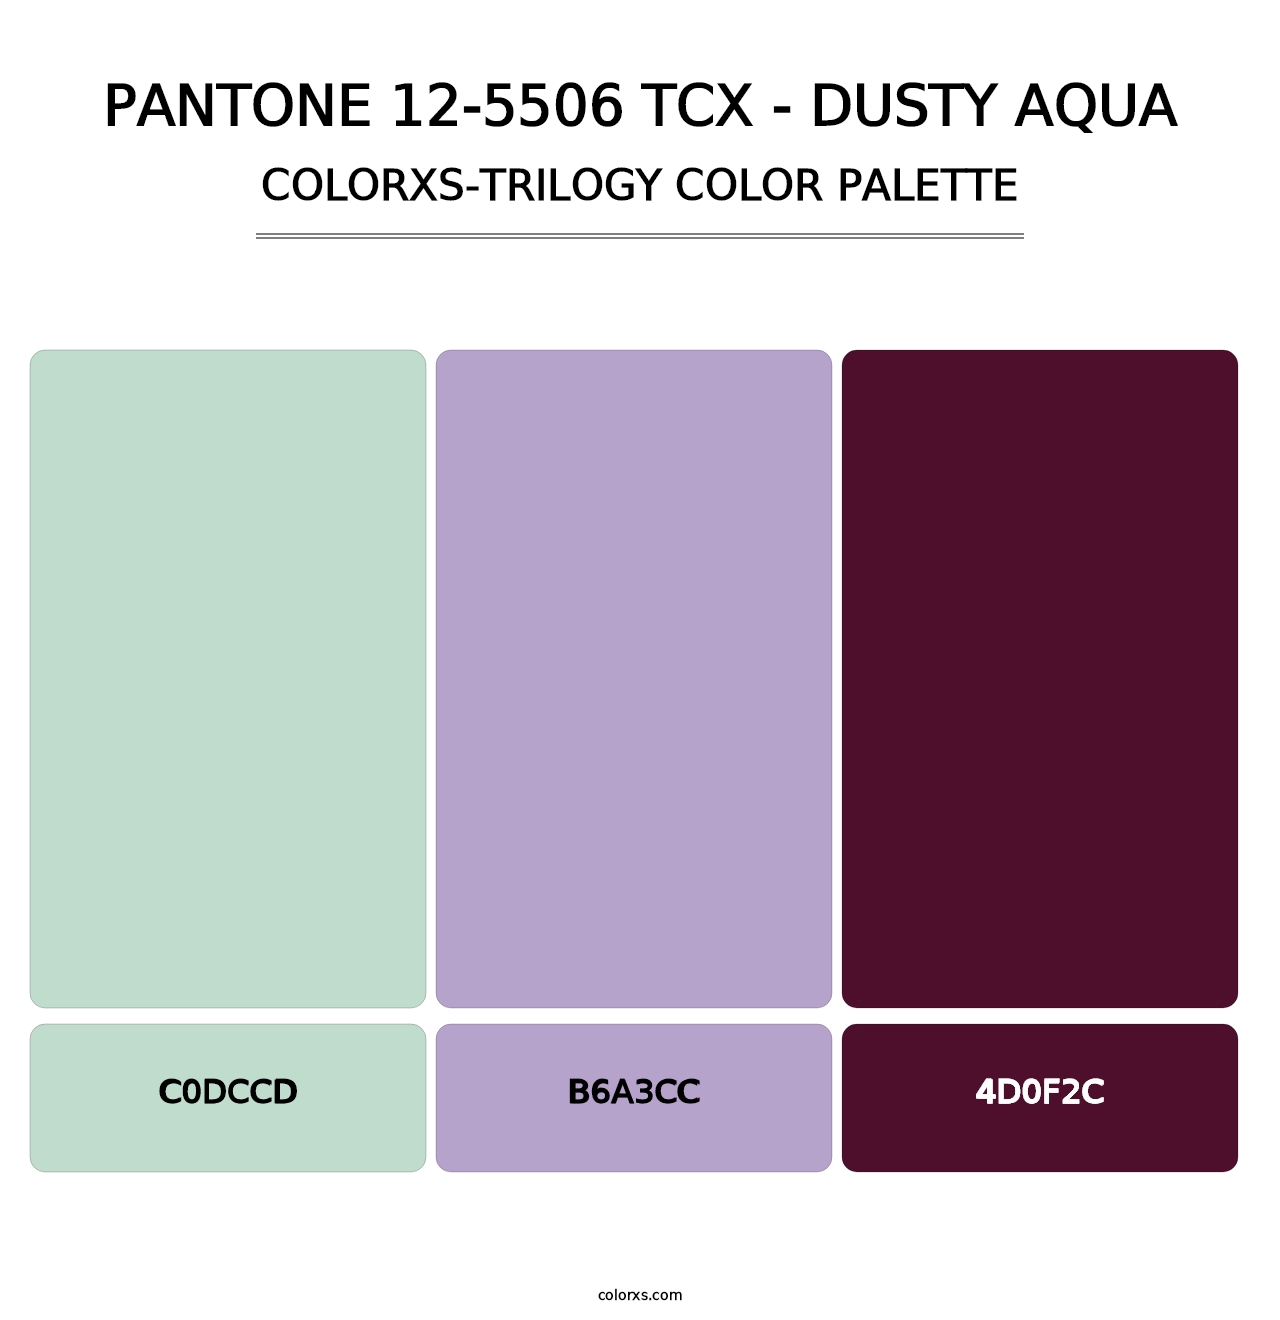 PANTONE 12-5506 TCX - Dusty Aqua - Colorxs Trilogy Palette